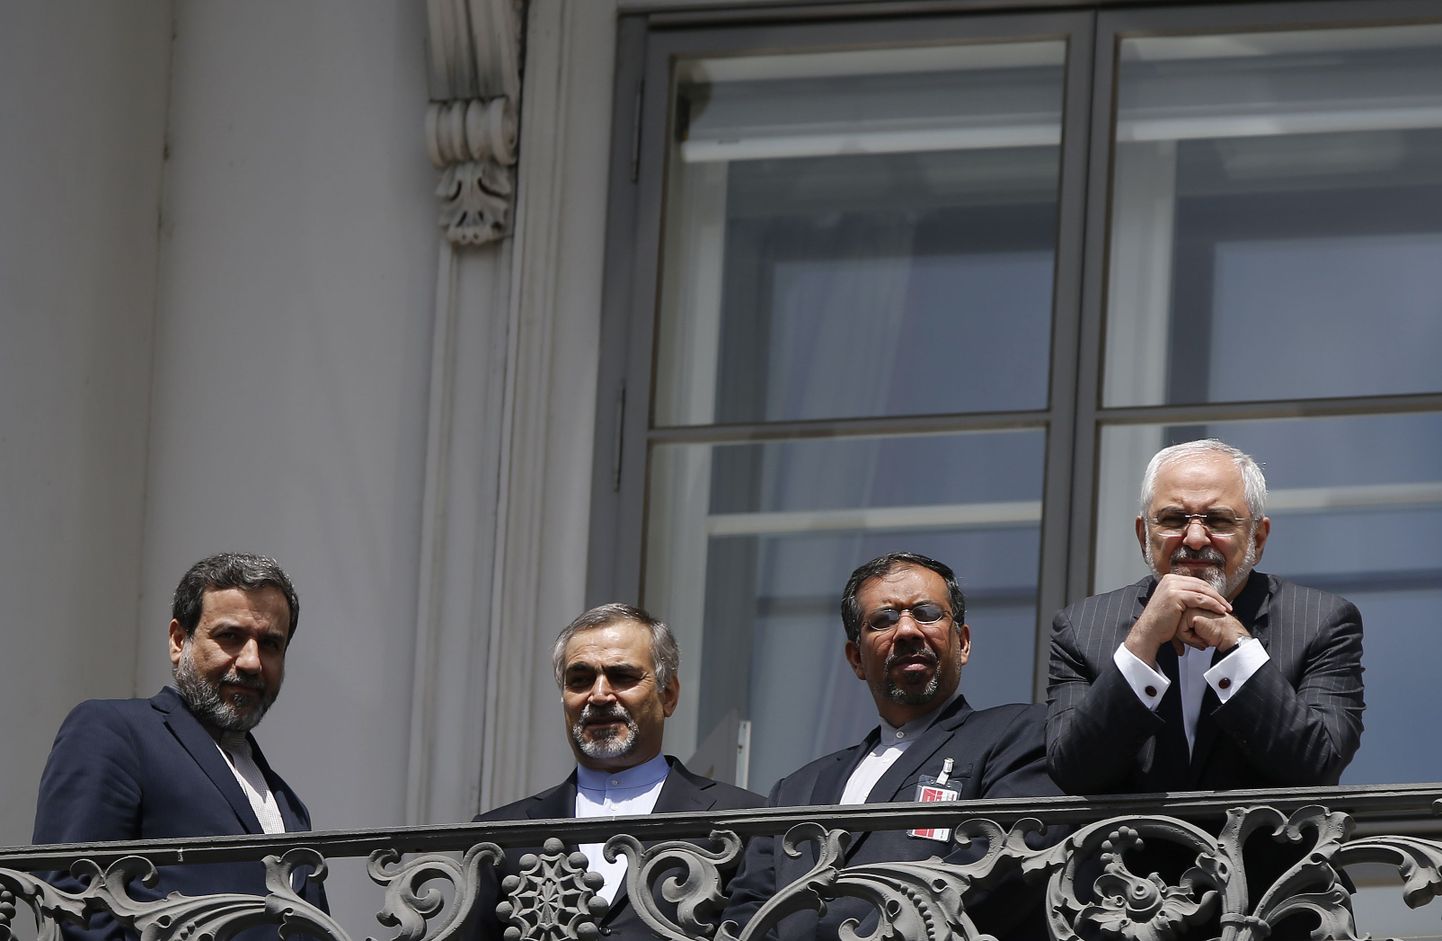 Iraani delegatsioon kõnelustel.